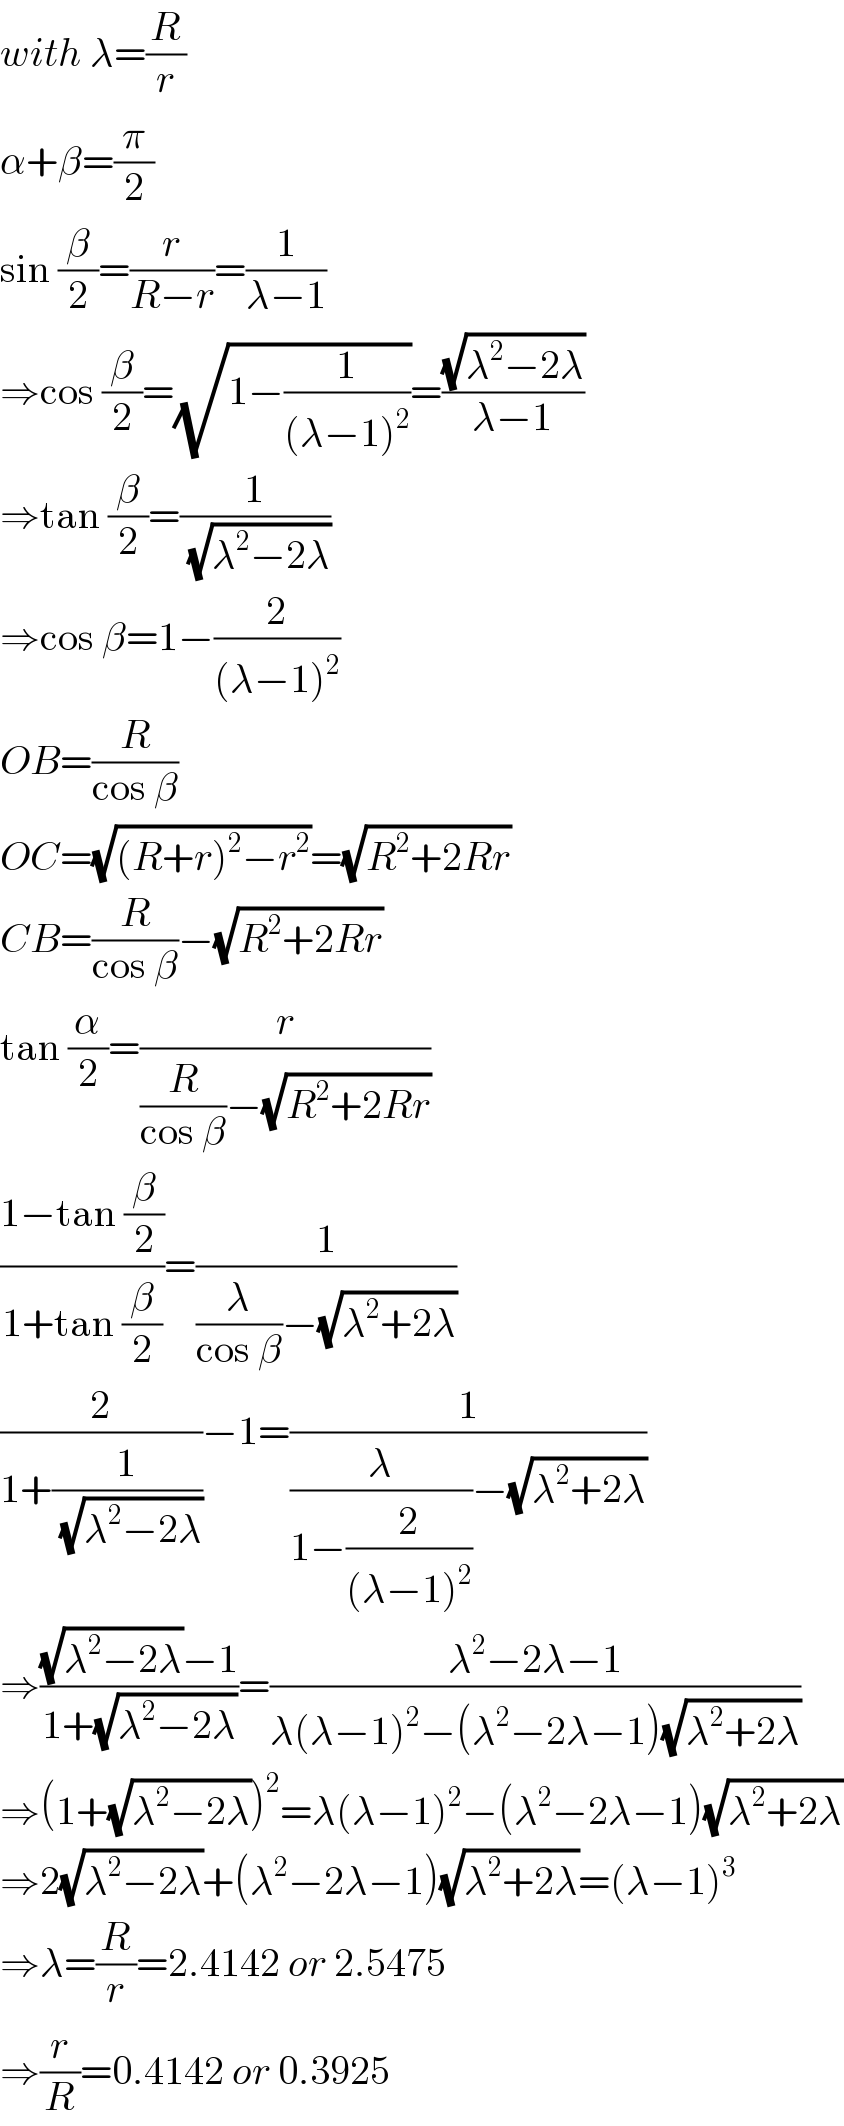 with λ=(R/r)  α+β=(π/2)  sin (β/2)=(r/(R−r))=(1/(λ−1))  ⇒cos (β/2)=(√(1−(1/((λ−1)^2 ))))=((√(λ^2 −2λ))/(λ−1))  ⇒tan (β/2)=(1/(√(λ^2 −2λ)))  ⇒cos β=1−(2/((λ−1)^2 ))  OB=(R/(cos β))  OC=(√((R+r)^2 −r^2 ))=(√(R^2 +2Rr))  CB=(R/(cos β))−(√(R^2 +2Rr))  tan (α/2)=(r/((R/(cos β))−(√(R^2 +2Rr))))  ((1−tan (β/2))/(1+tan (β/2)))=(1/((λ/(cos β))−(√(λ^2 +2λ))))  (2/(1+(1/(√(λ^2 −2λ)))))−1=(1/((λ/(1−(2/((λ−1)^2 ))))−(√(λ^2 +2λ))))  ⇒(((√(λ^2 −2λ))−1)/(1+(√(λ^2 −2λ))))=((λ^2 −2λ−1)/(λ(λ−1)^2 −(λ^2 −2λ−1)(√(λ^2 +2λ))))  ⇒(1+(√(λ^2 −2λ)))^2 =λ(λ−1)^2 −(λ^2 −2λ−1)(√(λ^2 +2λ))  ⇒2(√(λ^2 −2λ))+(λ^2 −2λ−1)(√(λ^2 +2λ))=(λ−1)^3   ⇒λ=(R/r)=2.4142 or 2.5475  ⇒(r/R)=0.4142 or 0.3925  